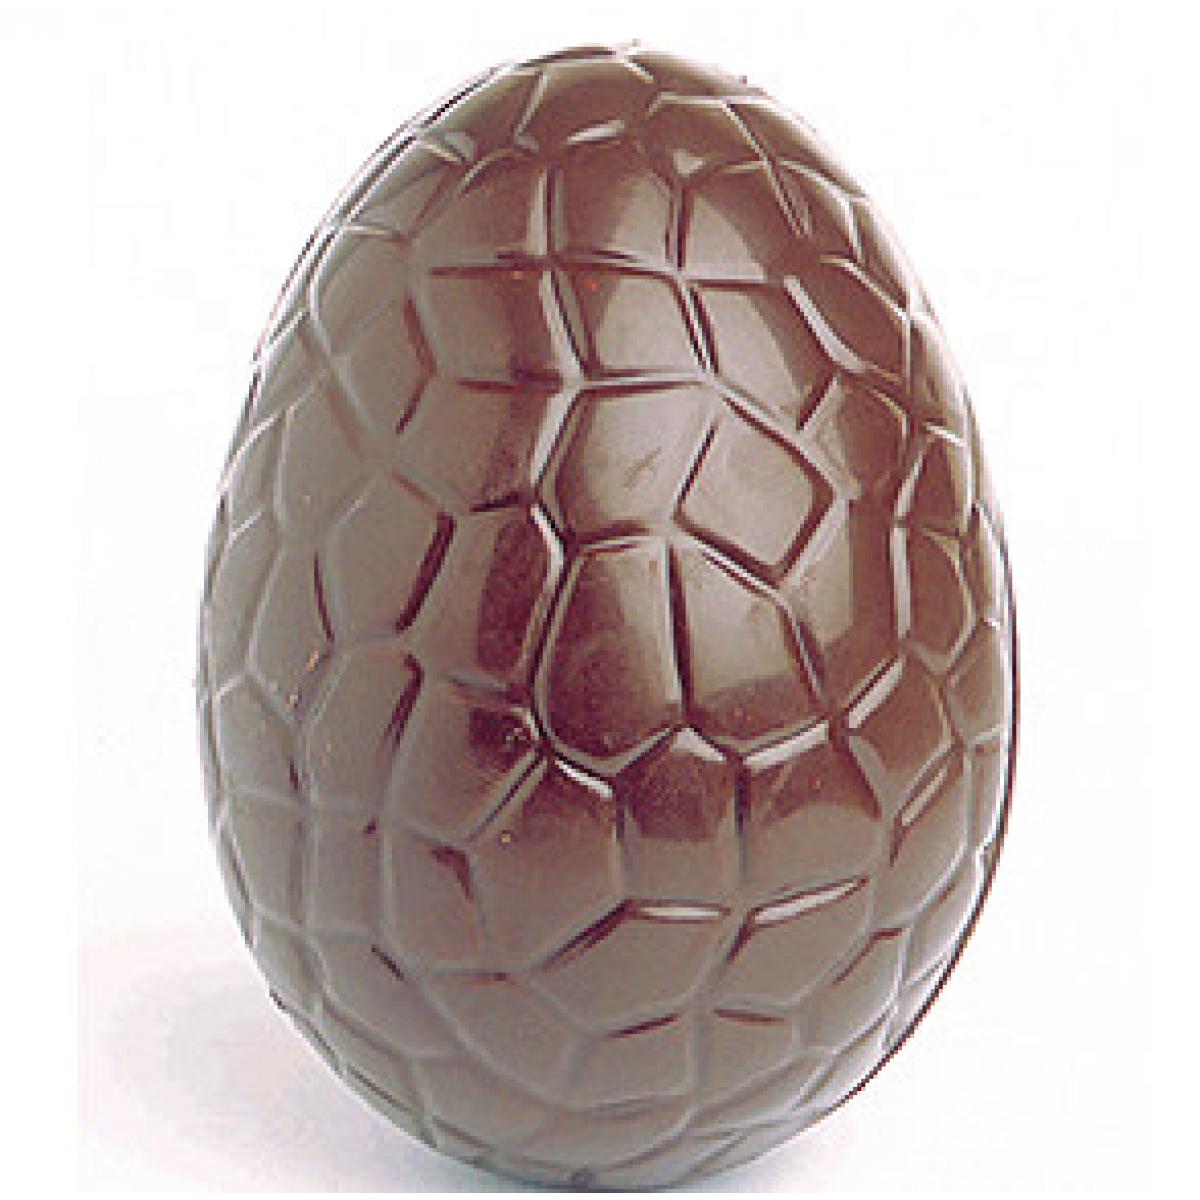 Купить форму для яиц. Форма поликарбонатная для шоколада яйцо. Поликарбонатная форма яйцо. Поликарбонатные формы для шоколадных яиц. Форма для шоколада "яйцо".